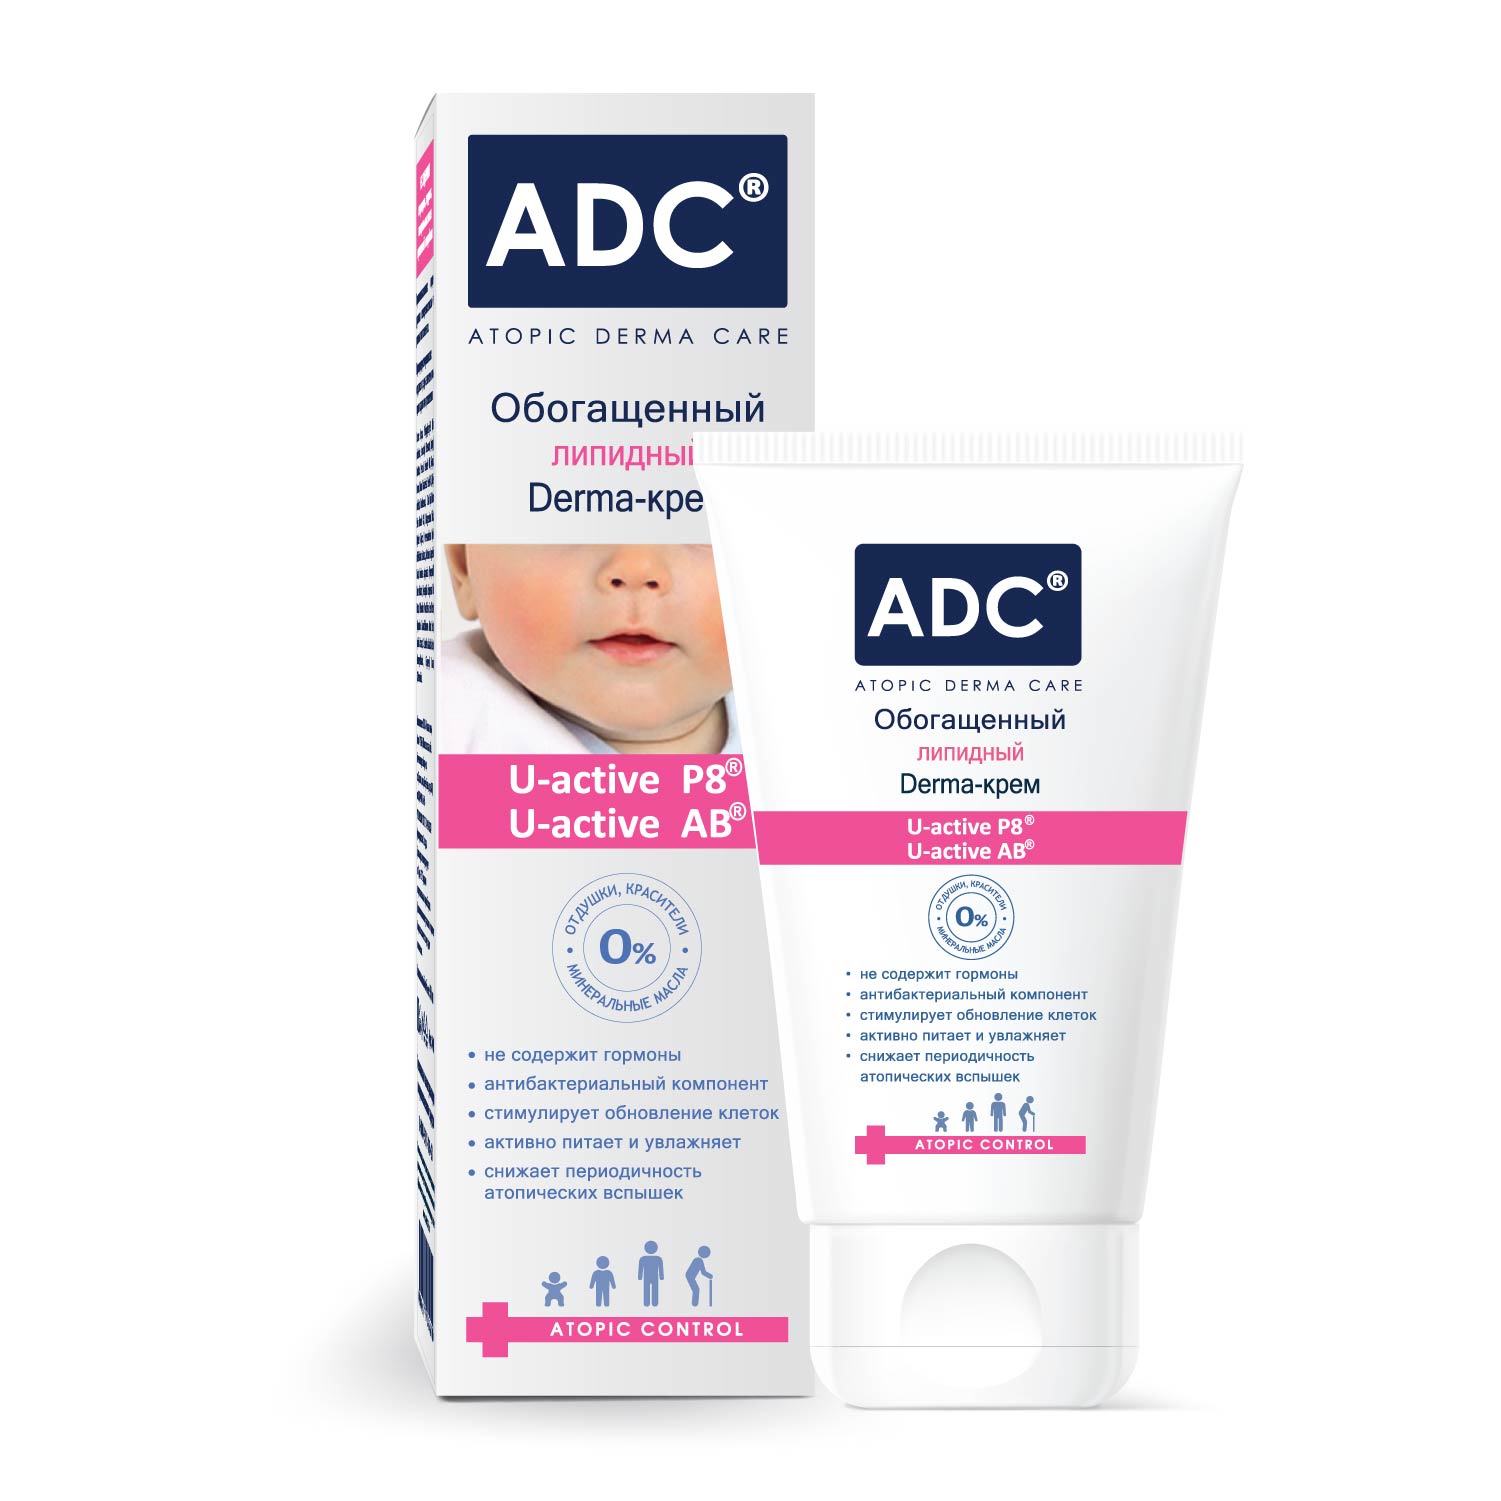 Обогащённый липидный Derma-крем серии ADC, 50 мл.